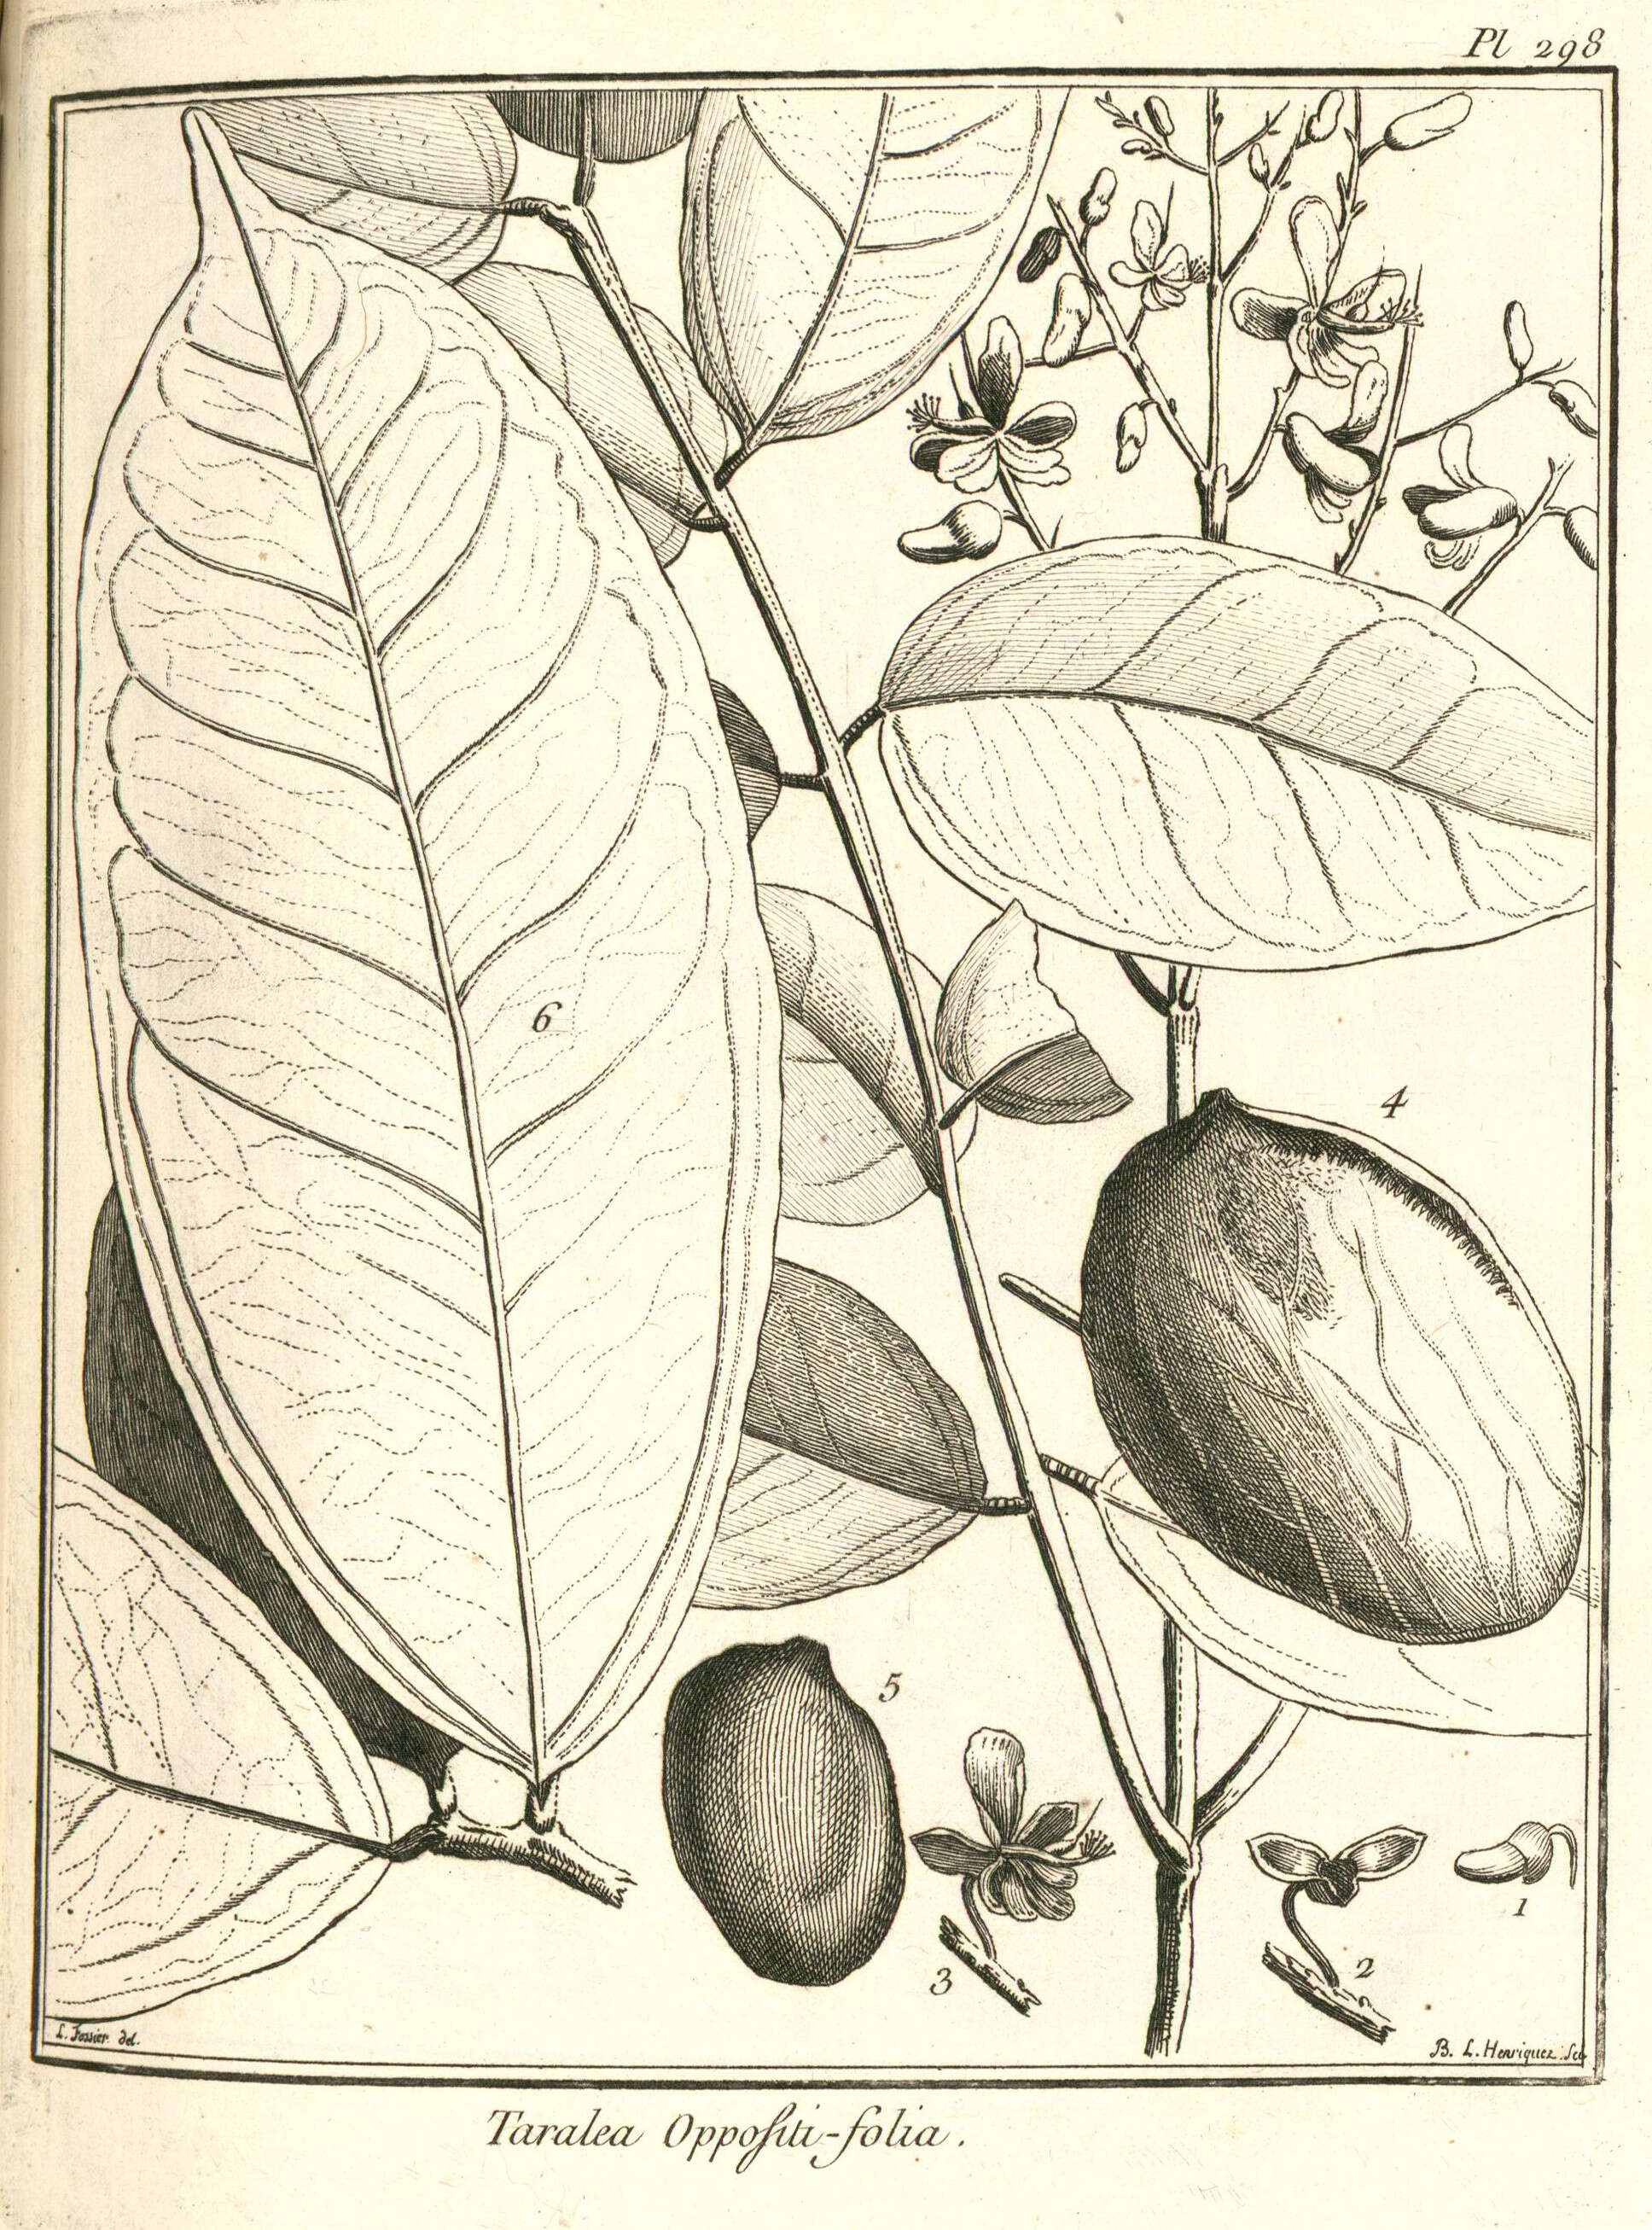 Image of taralea